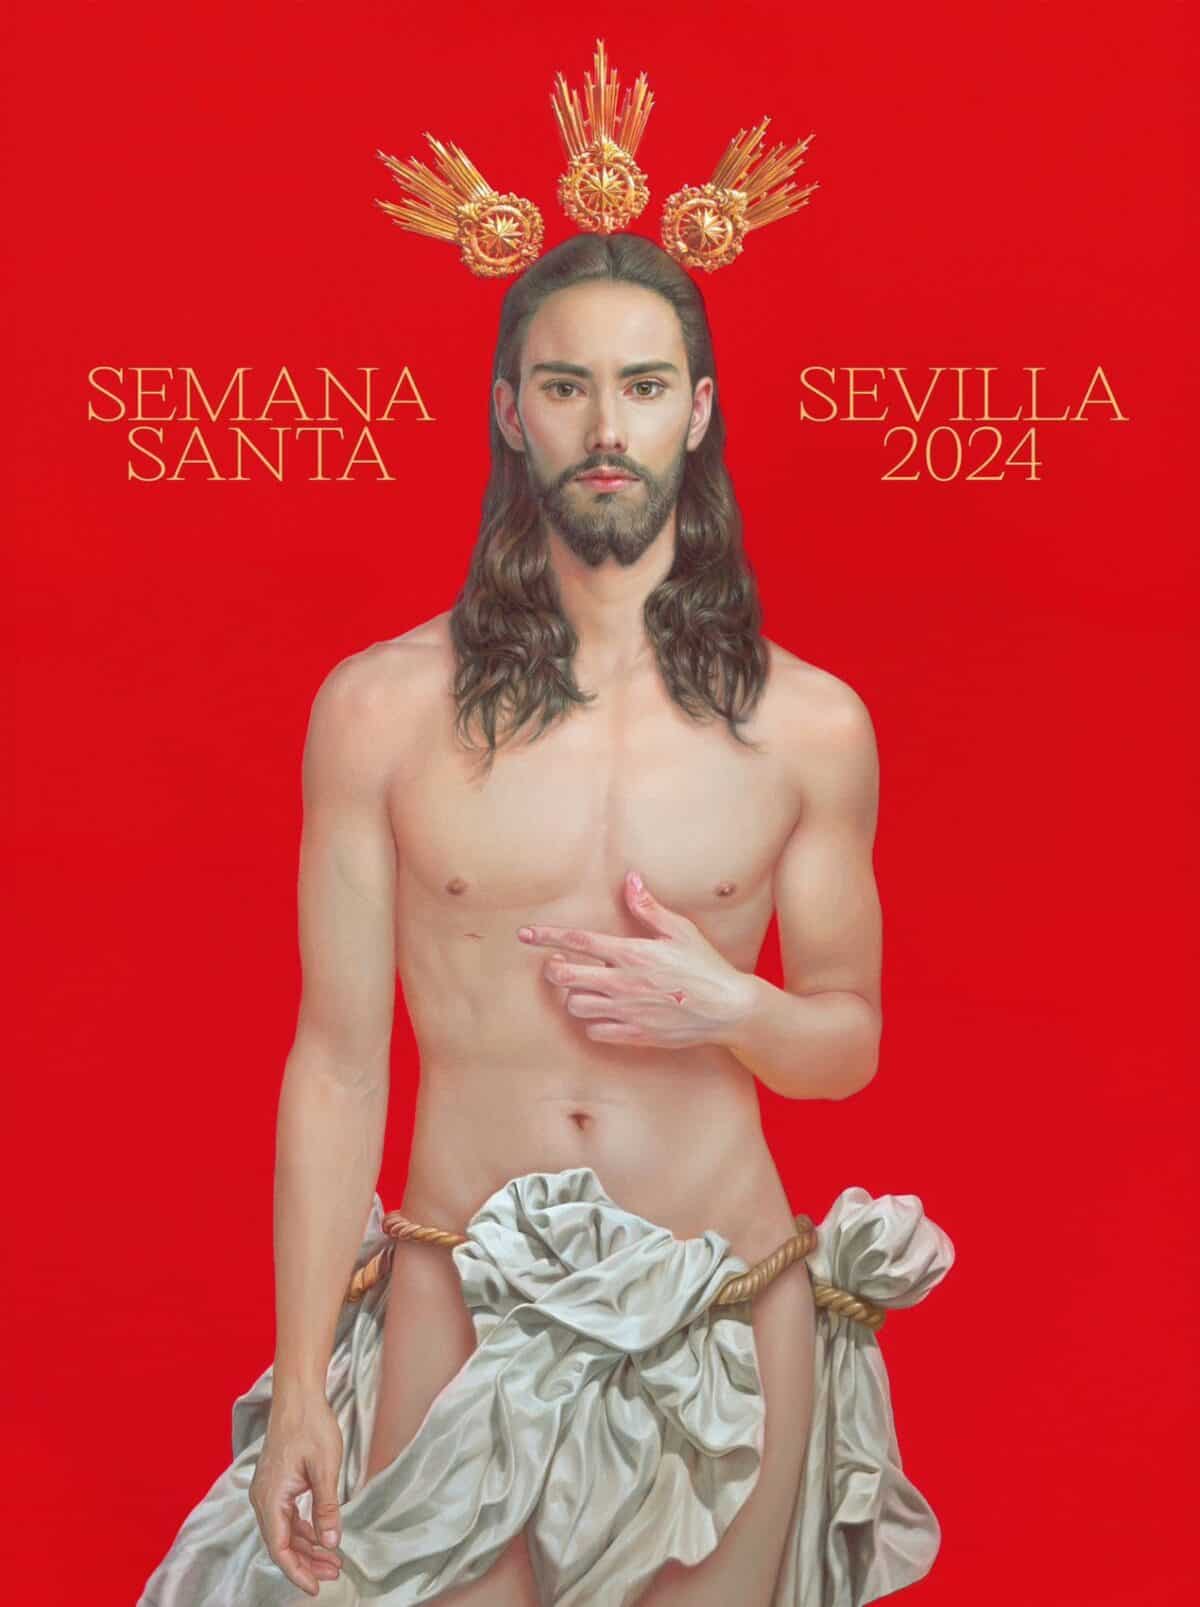 Cartel de la Semana Santa en Sevilla se volvió viral por la imagen de Jesucristo: “No lo representa”